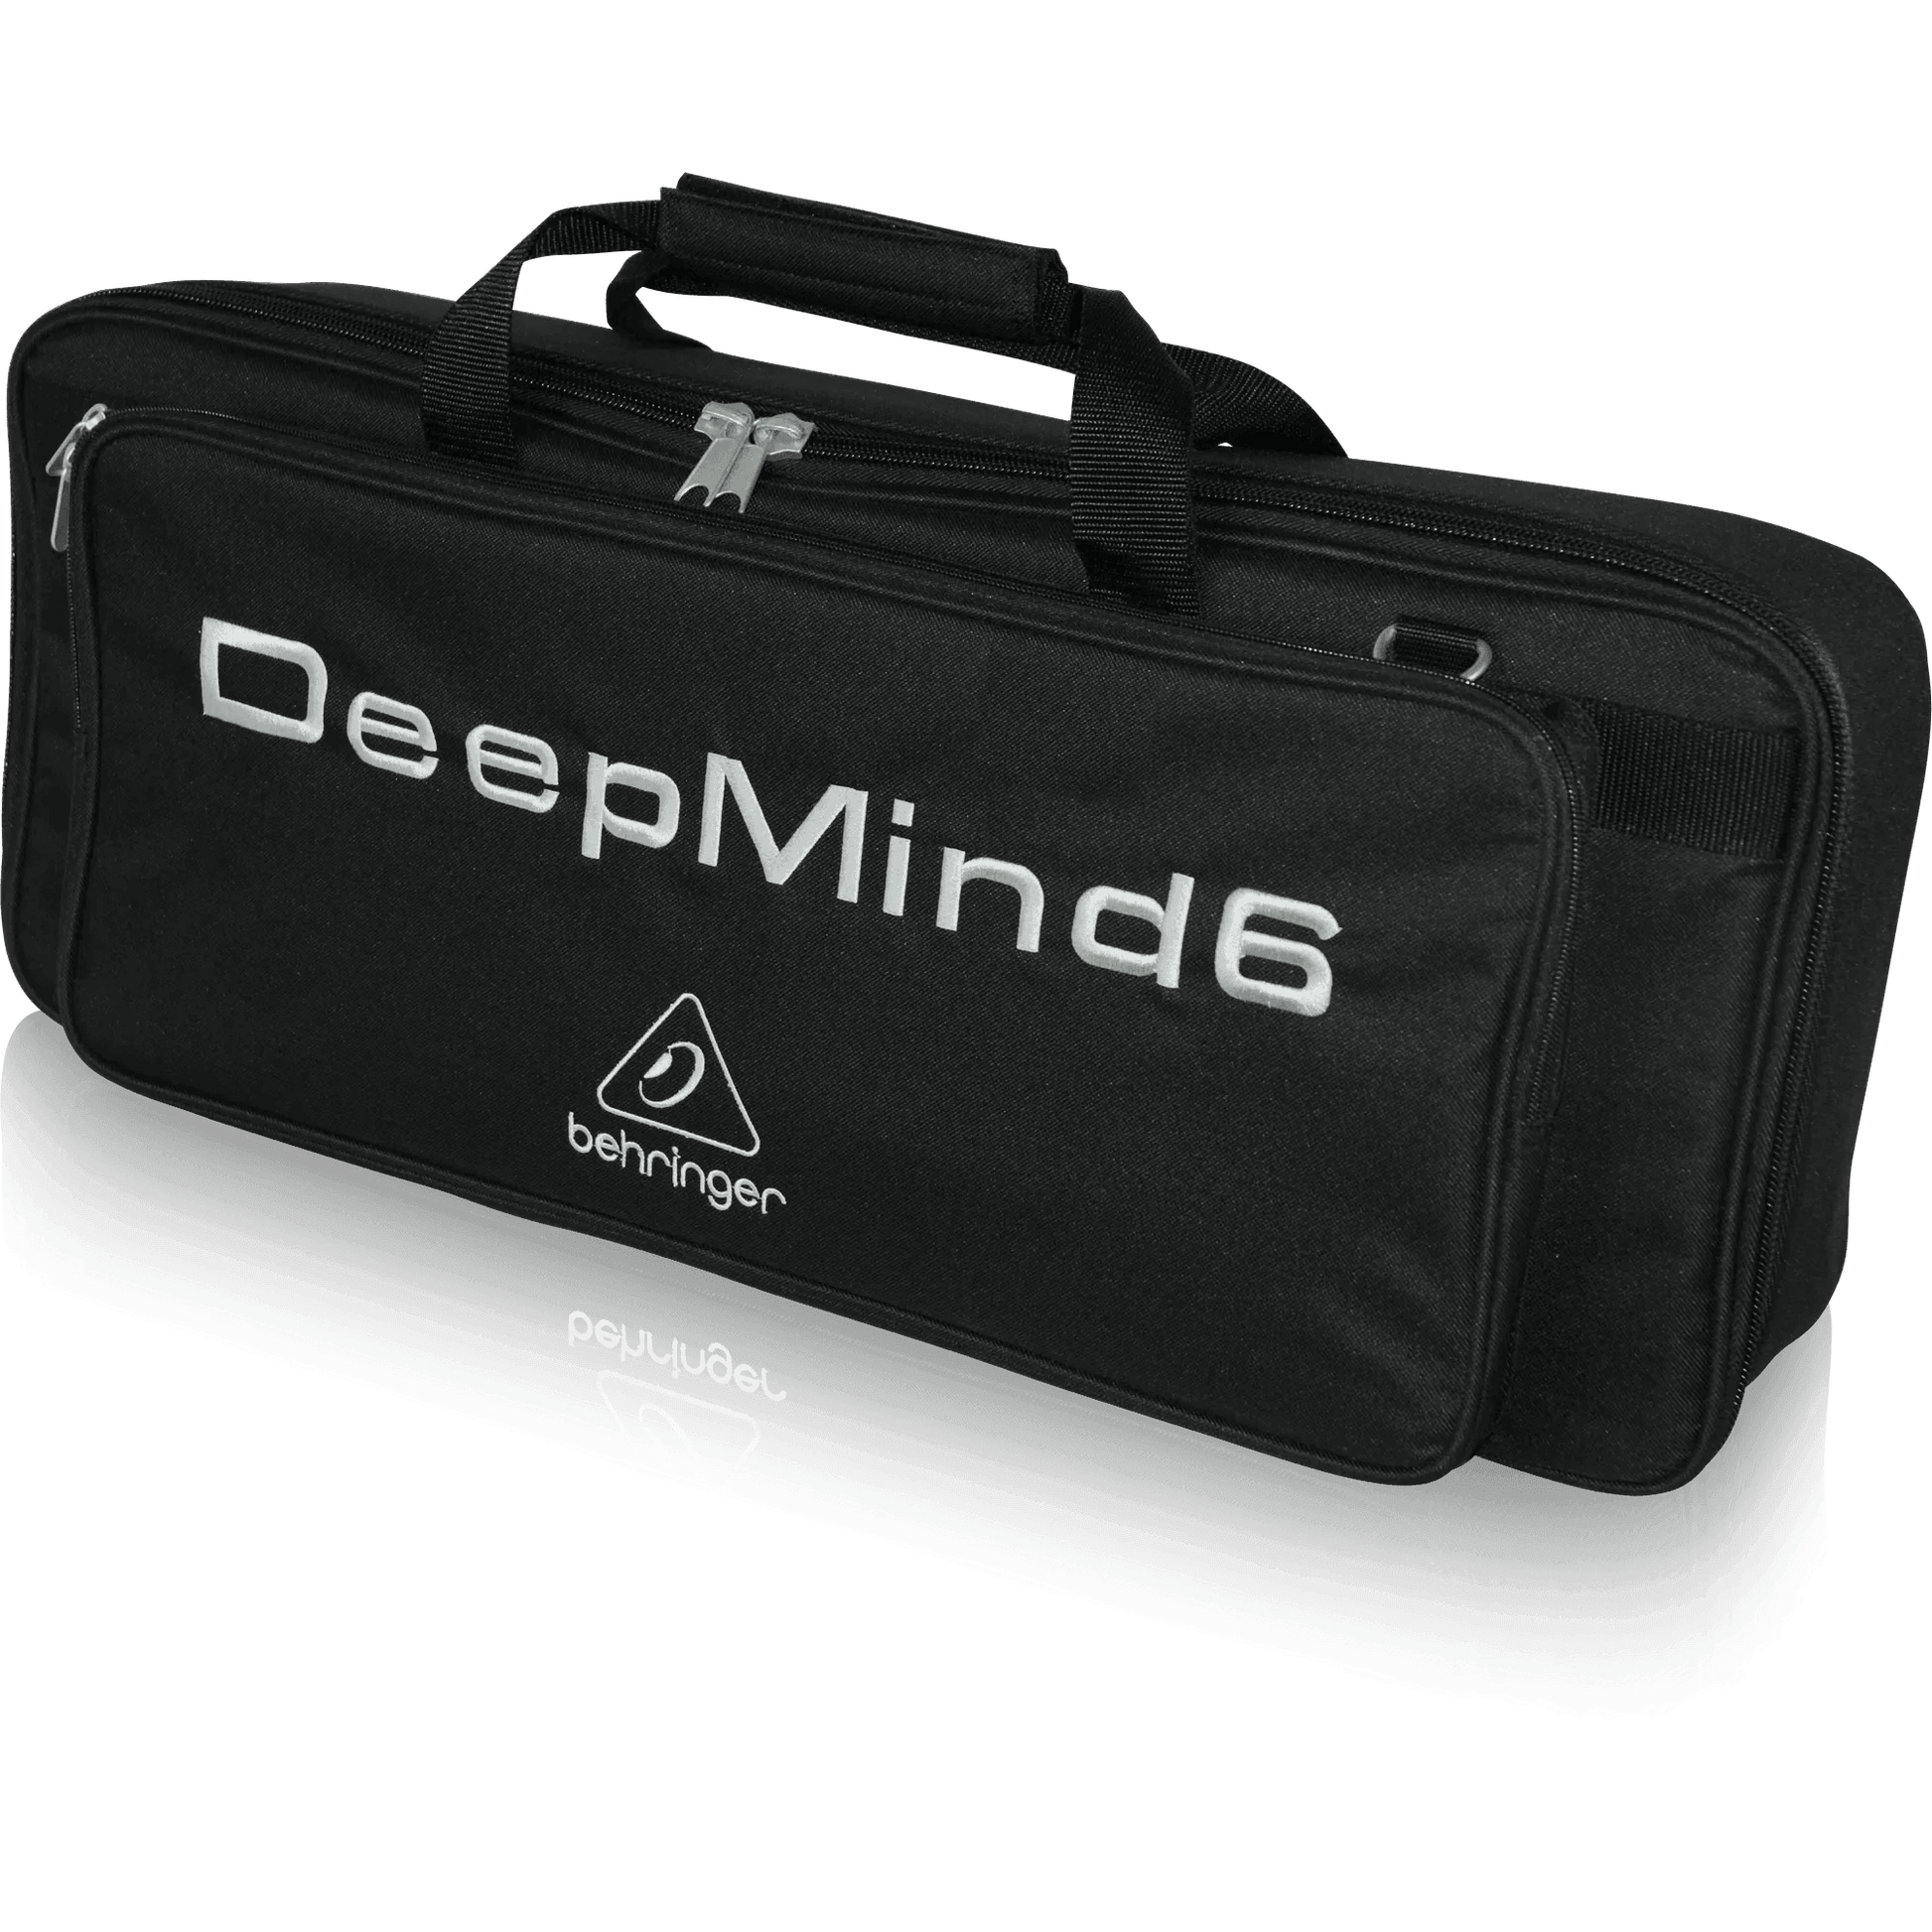 Behringer DEEPMIND 6-TB Deluxe Water Resistant Transport Bag for DEEPMIND 6